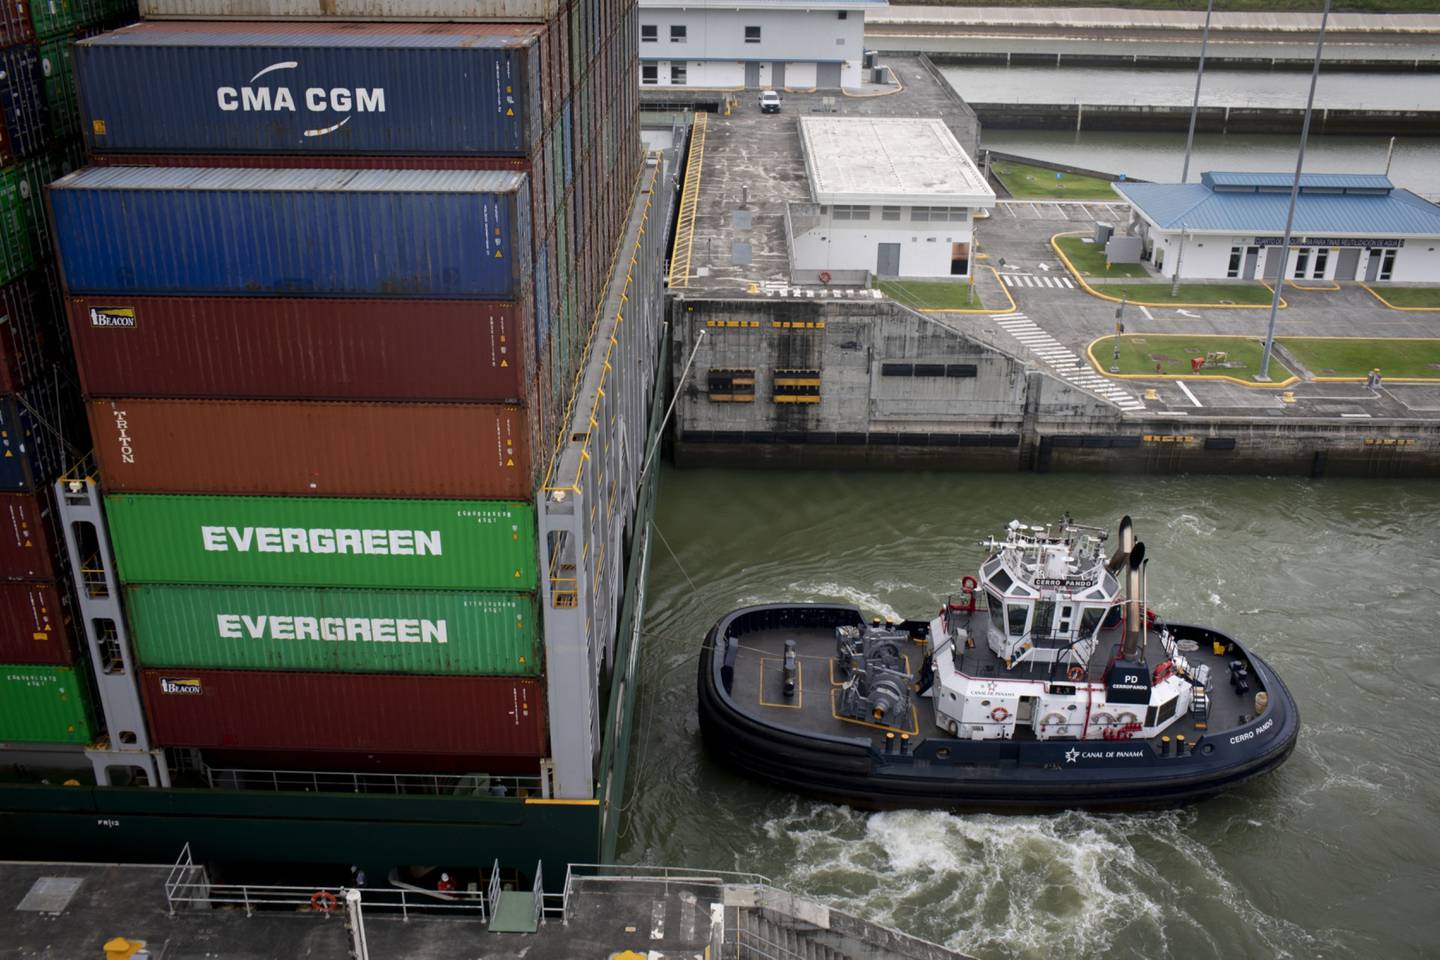 La nueva ley de cabotaje obligará a que los navíos que presten servicios dentro de aguas panameñas tengan accionistas y mano de obra mayoritariamente ciudadana del país.